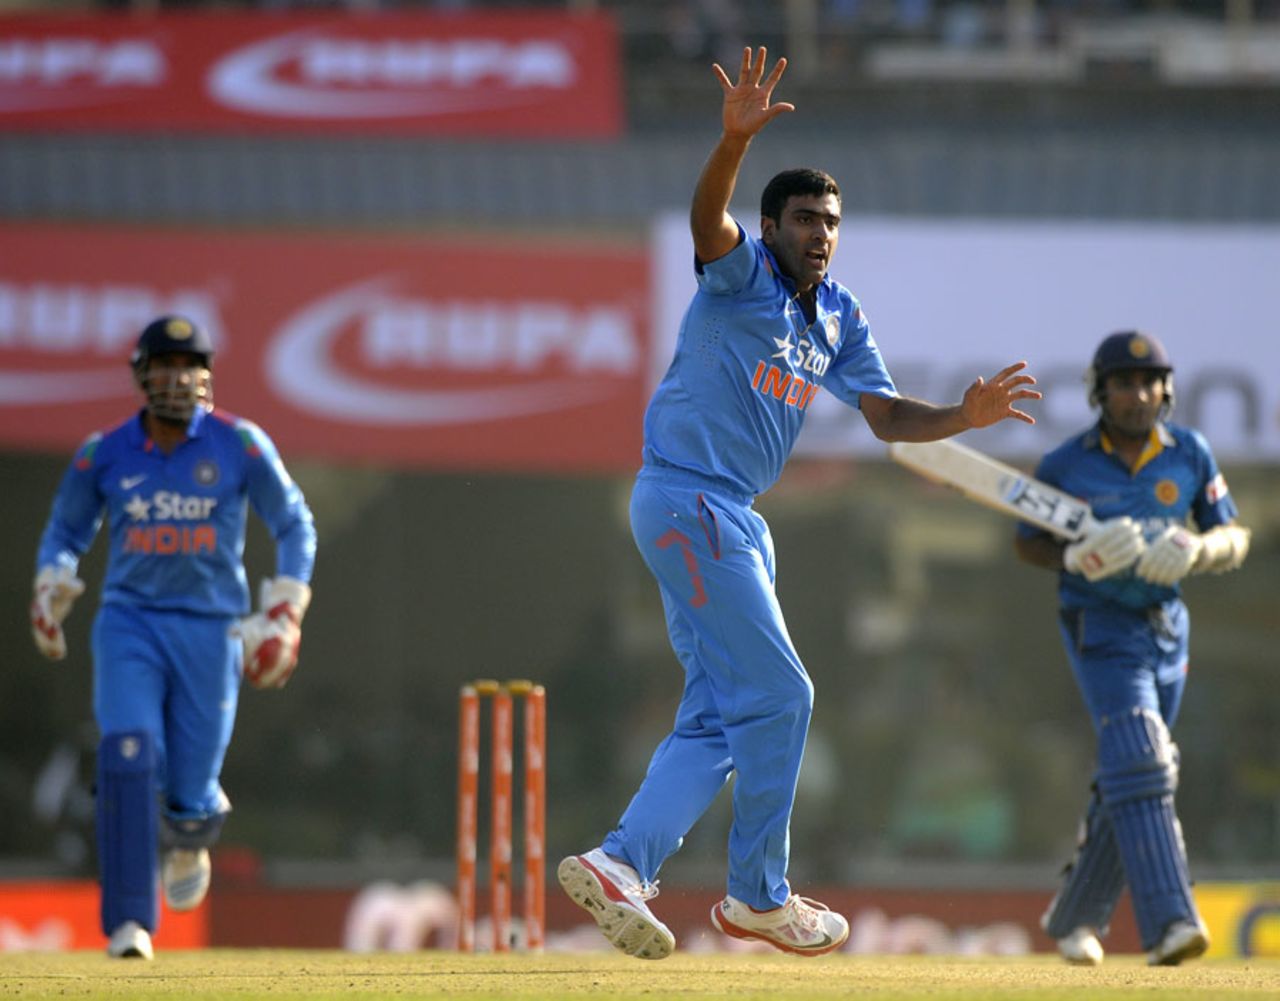 R Ashwin appeals successfully for the wicket of Mahela Jayawardene, India v Sri Lanka, 5th ODI, Ranchi, November 16, 2014